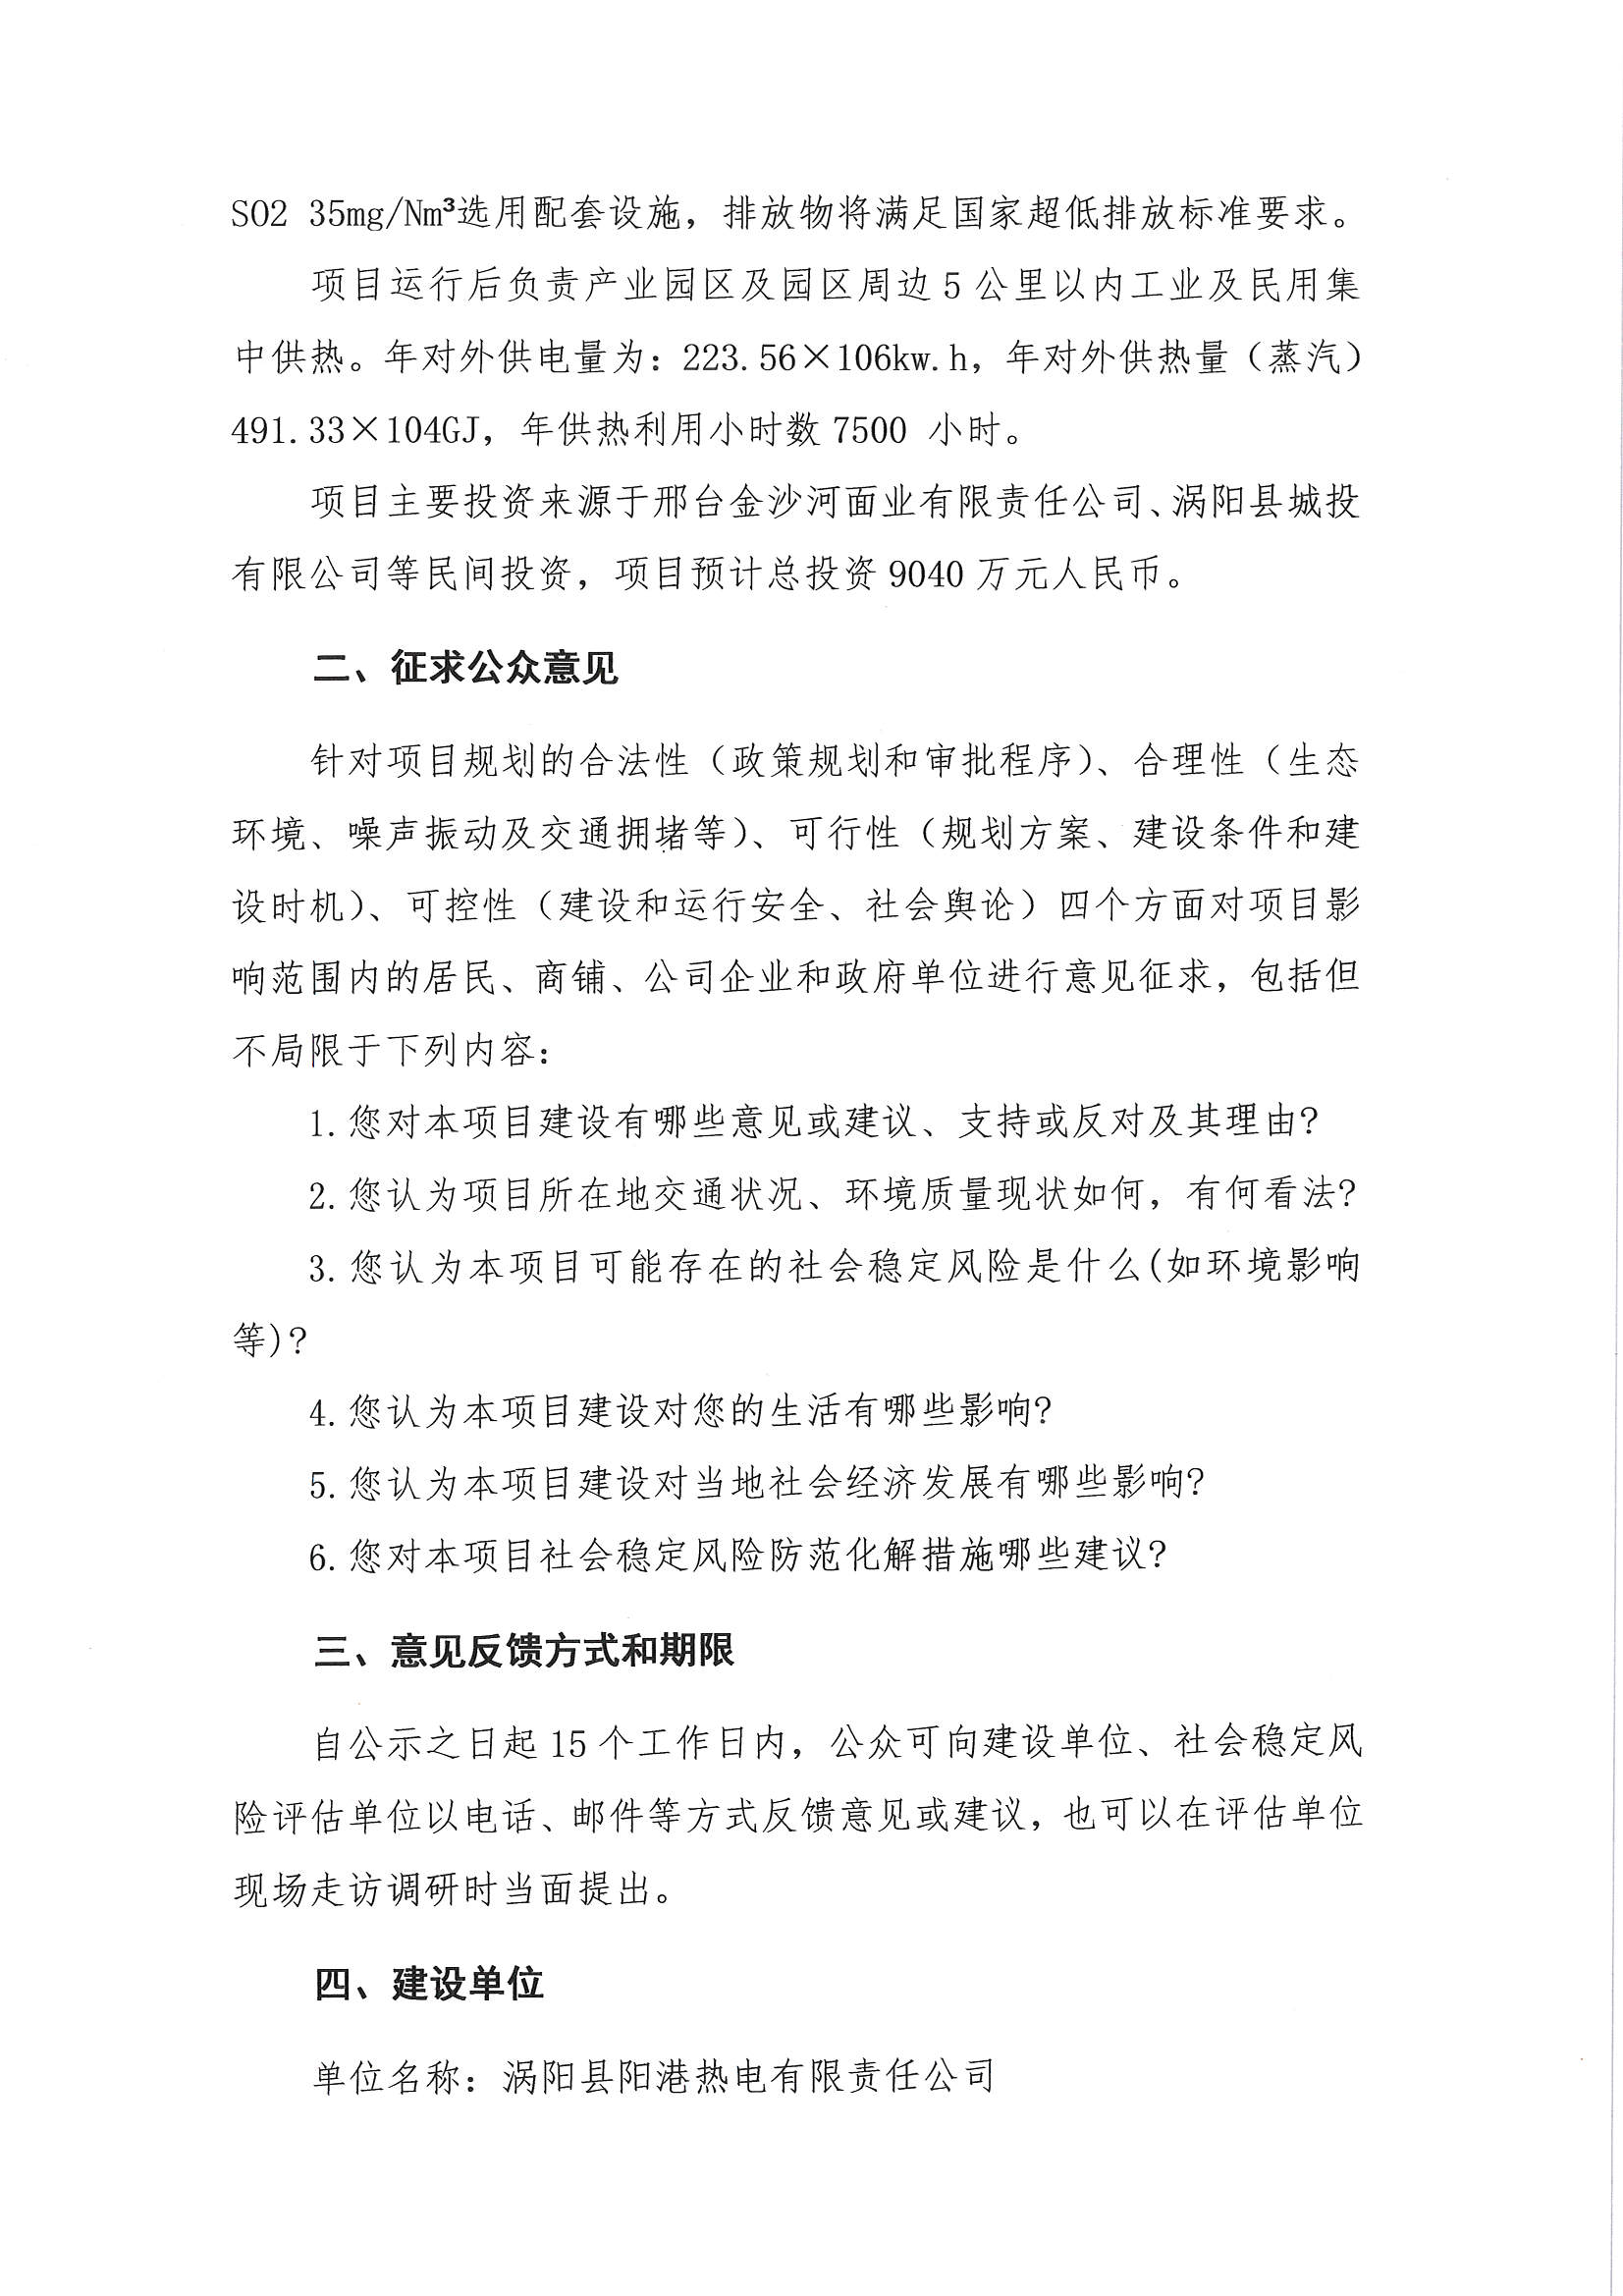 关于“涡阳县阳港热电有限责任公司热电联产项目社会稳定风险评估”的公示_页面_2.jpg